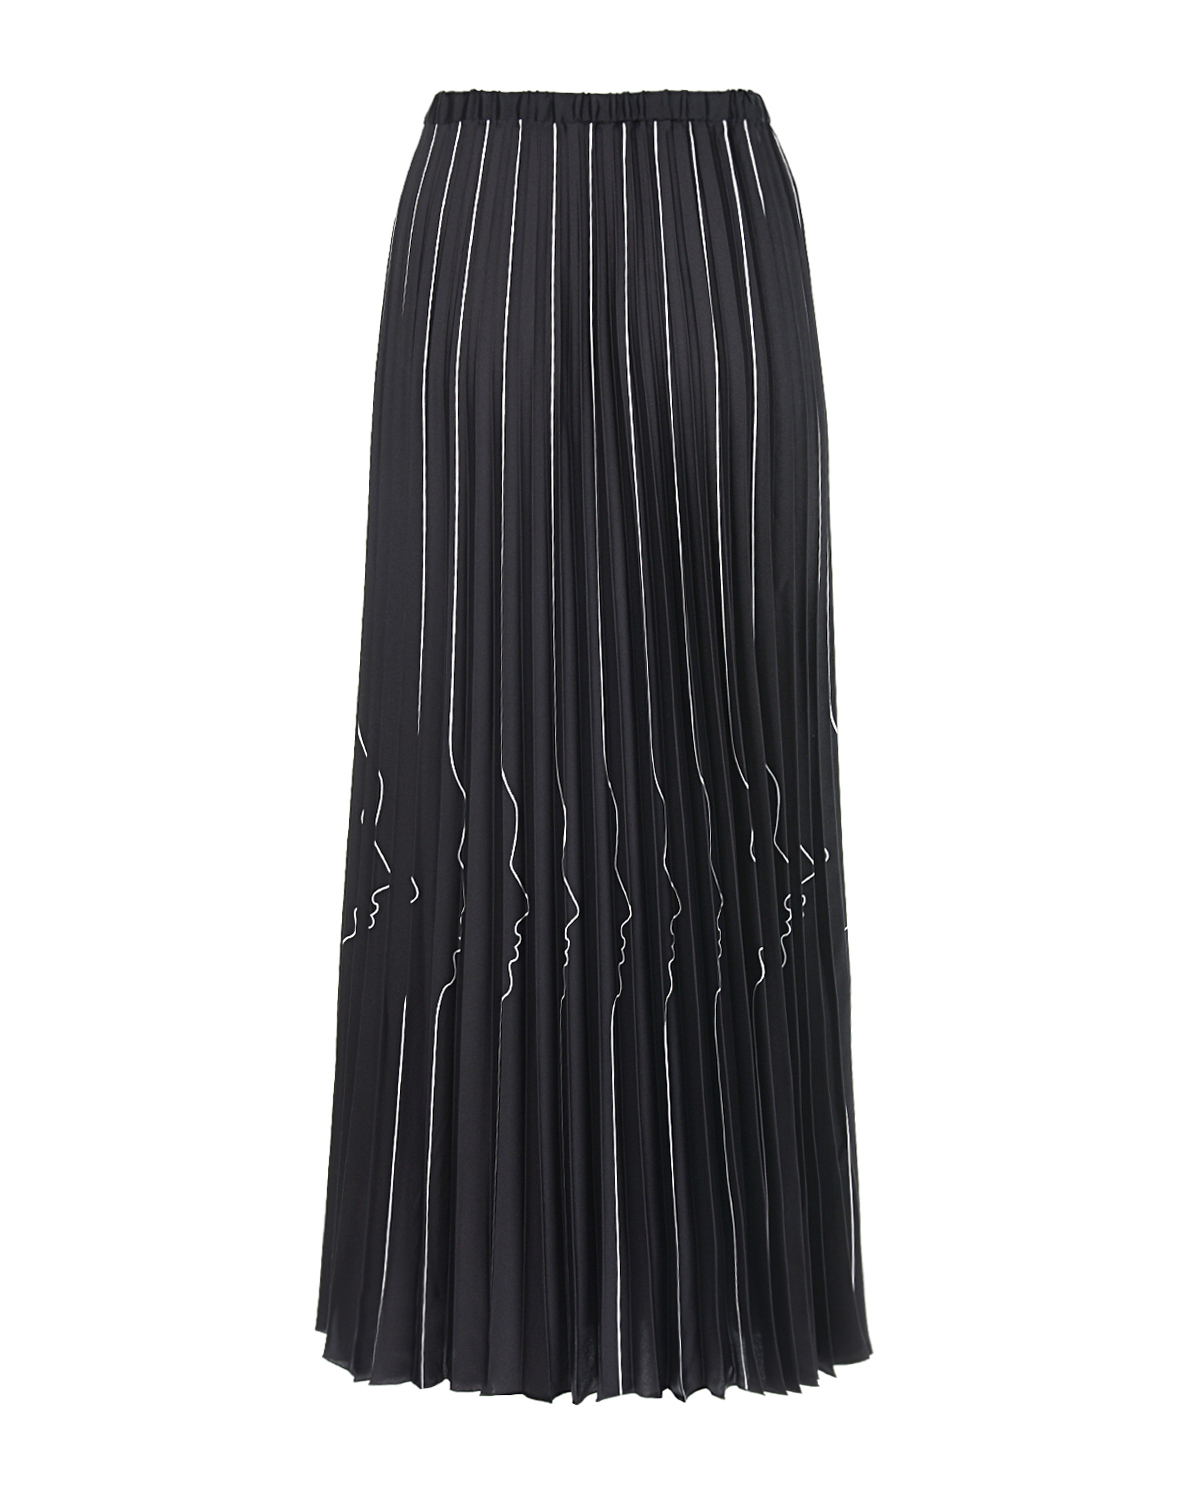 Юбка плиссе с изображением профилей Vivetta, размер 42, цвет черный - фото 2